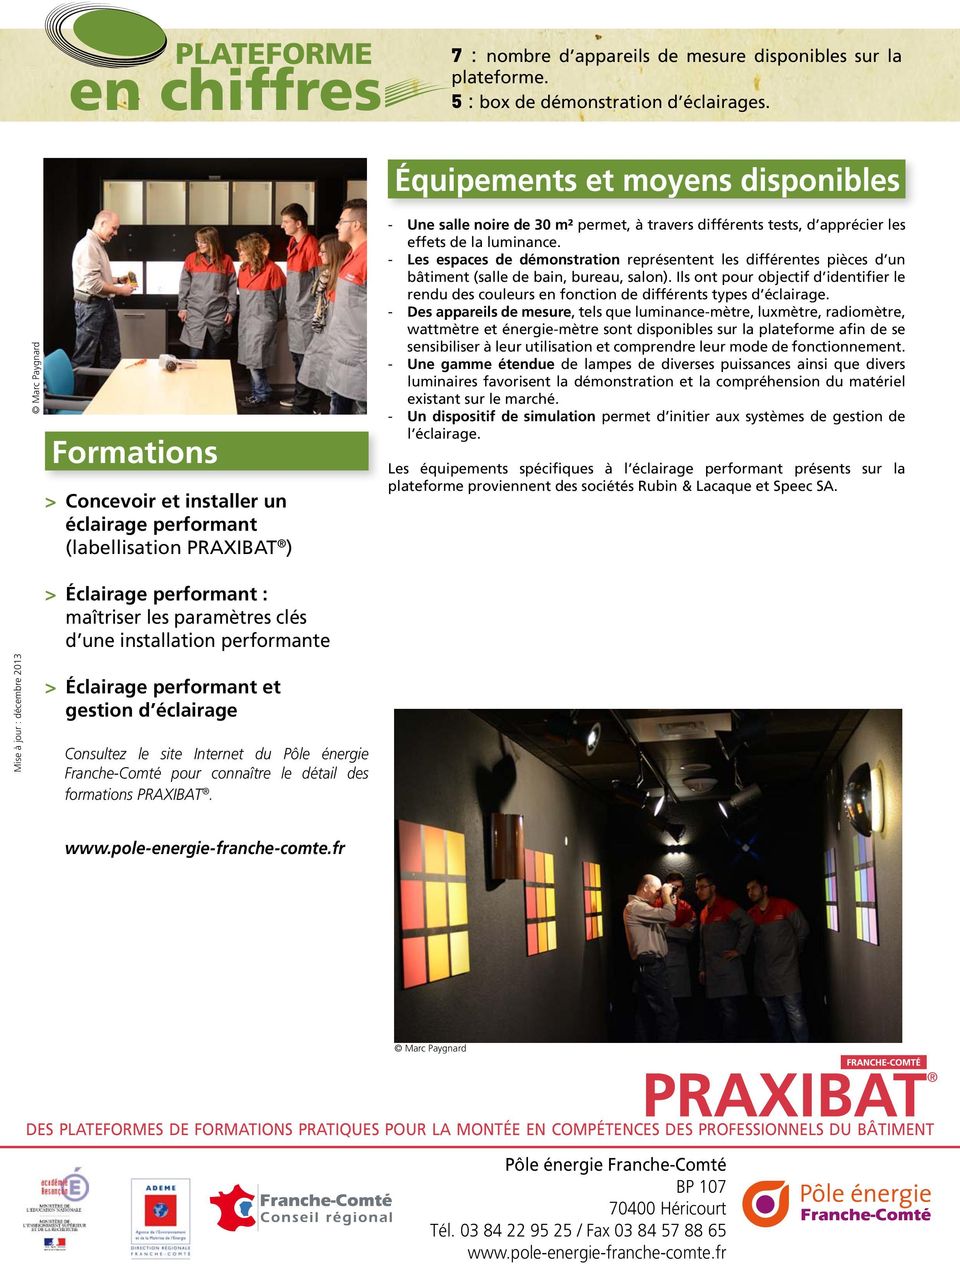 installation performante > Éclairage performant et gestion d éclairage Consultez le site Internet du Pôle énergie Franche-Comté pour connaître le détail des formations PRAXIBAT.